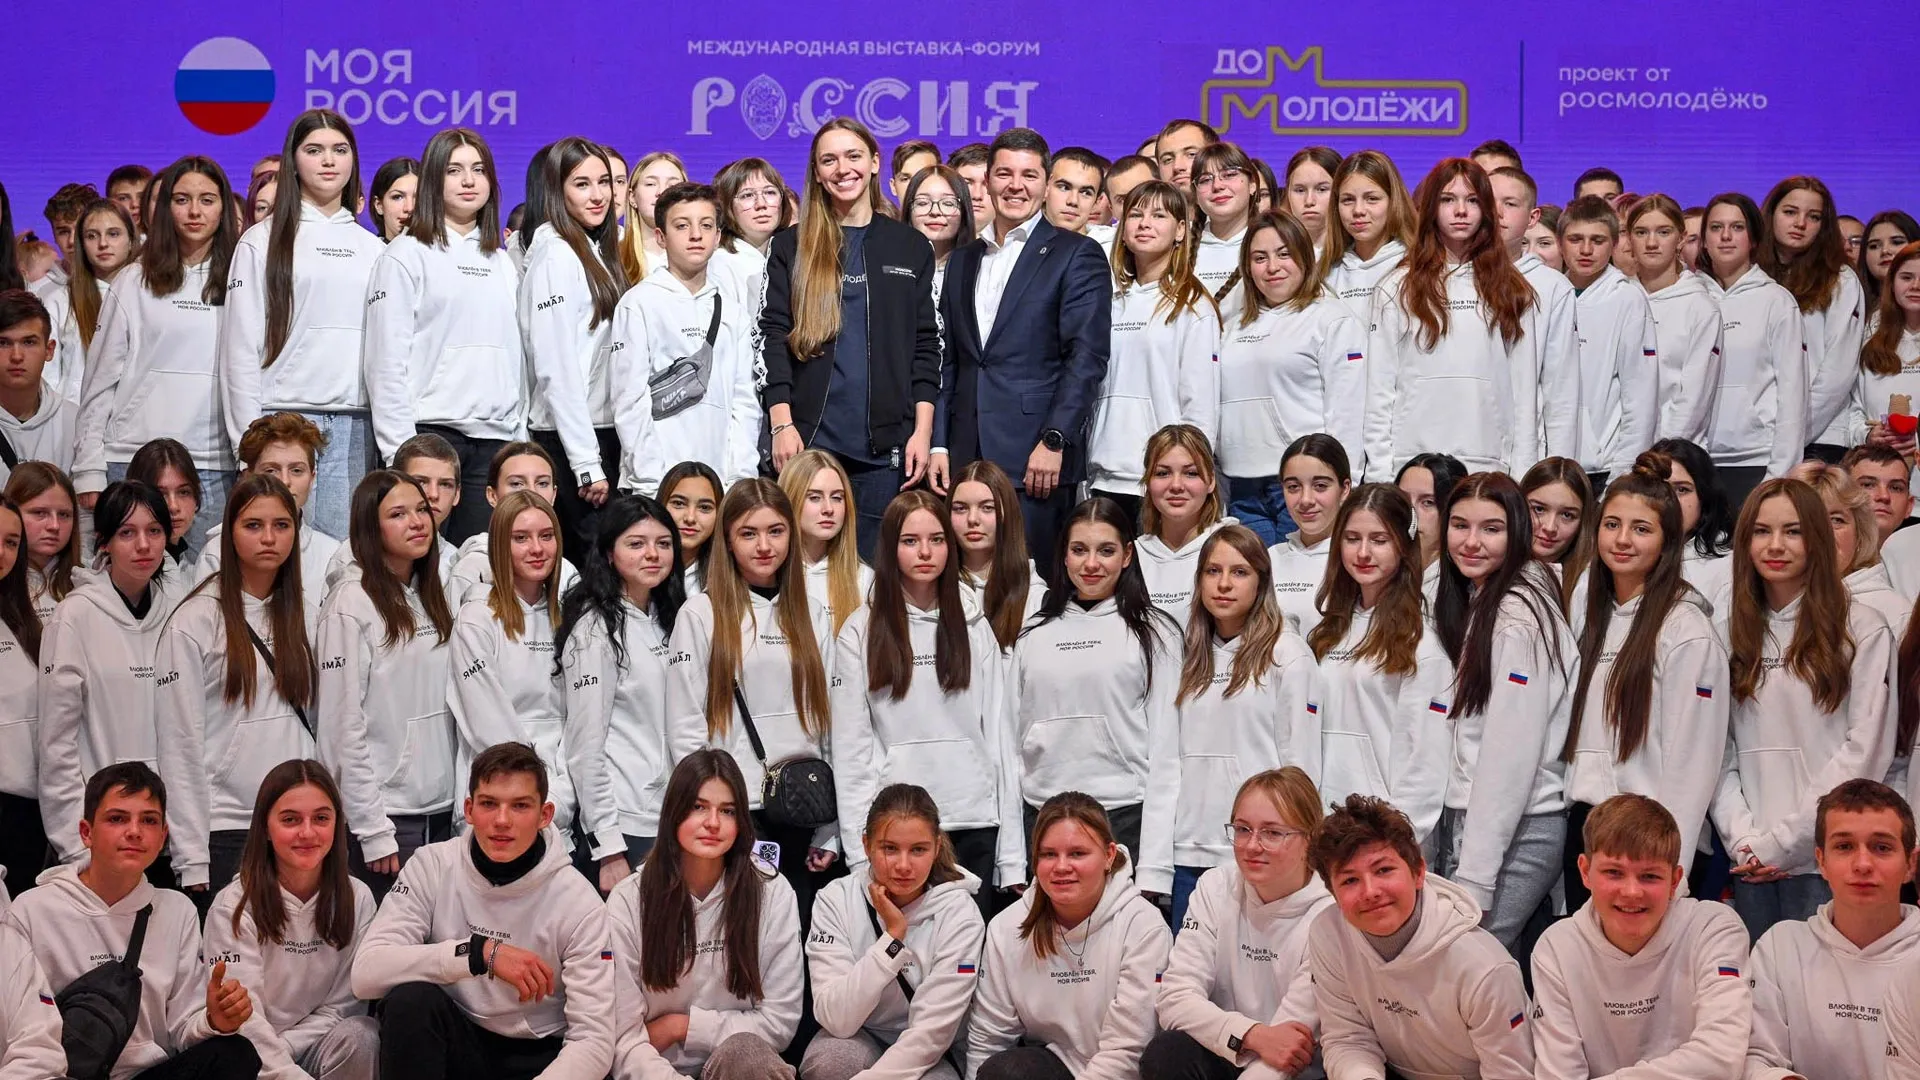 Дмитрий Артюхов встретился со школьниками из Волновахи, которые приехали в Москву. Фото: yanao.ru